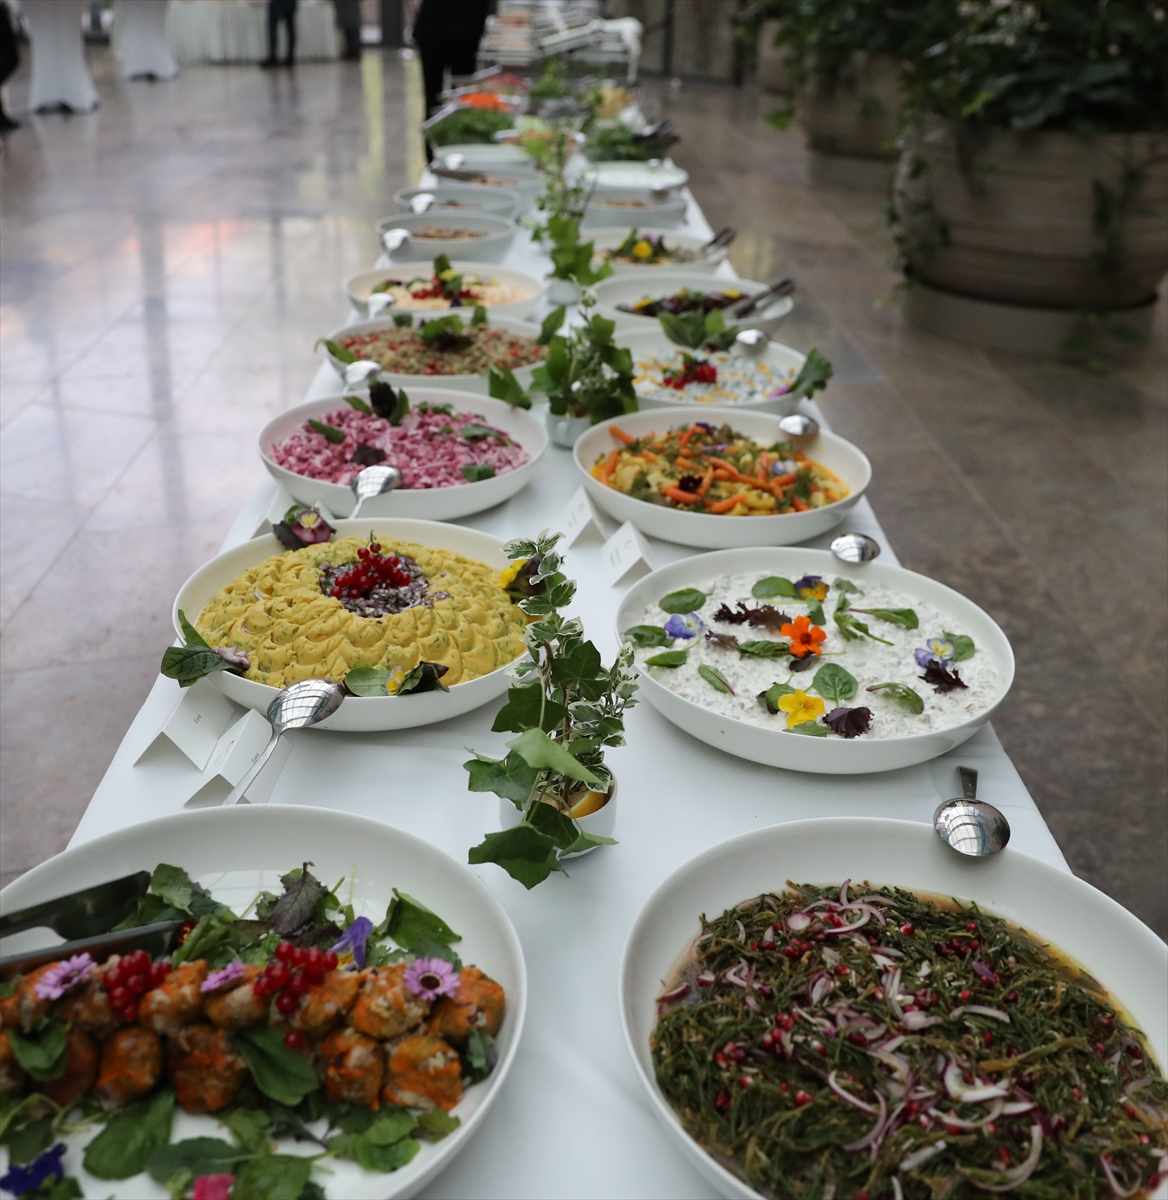 Almanya'da “Türk Mutfağı Haftası” kapsamında Ege lezzetleri tanıtıldı